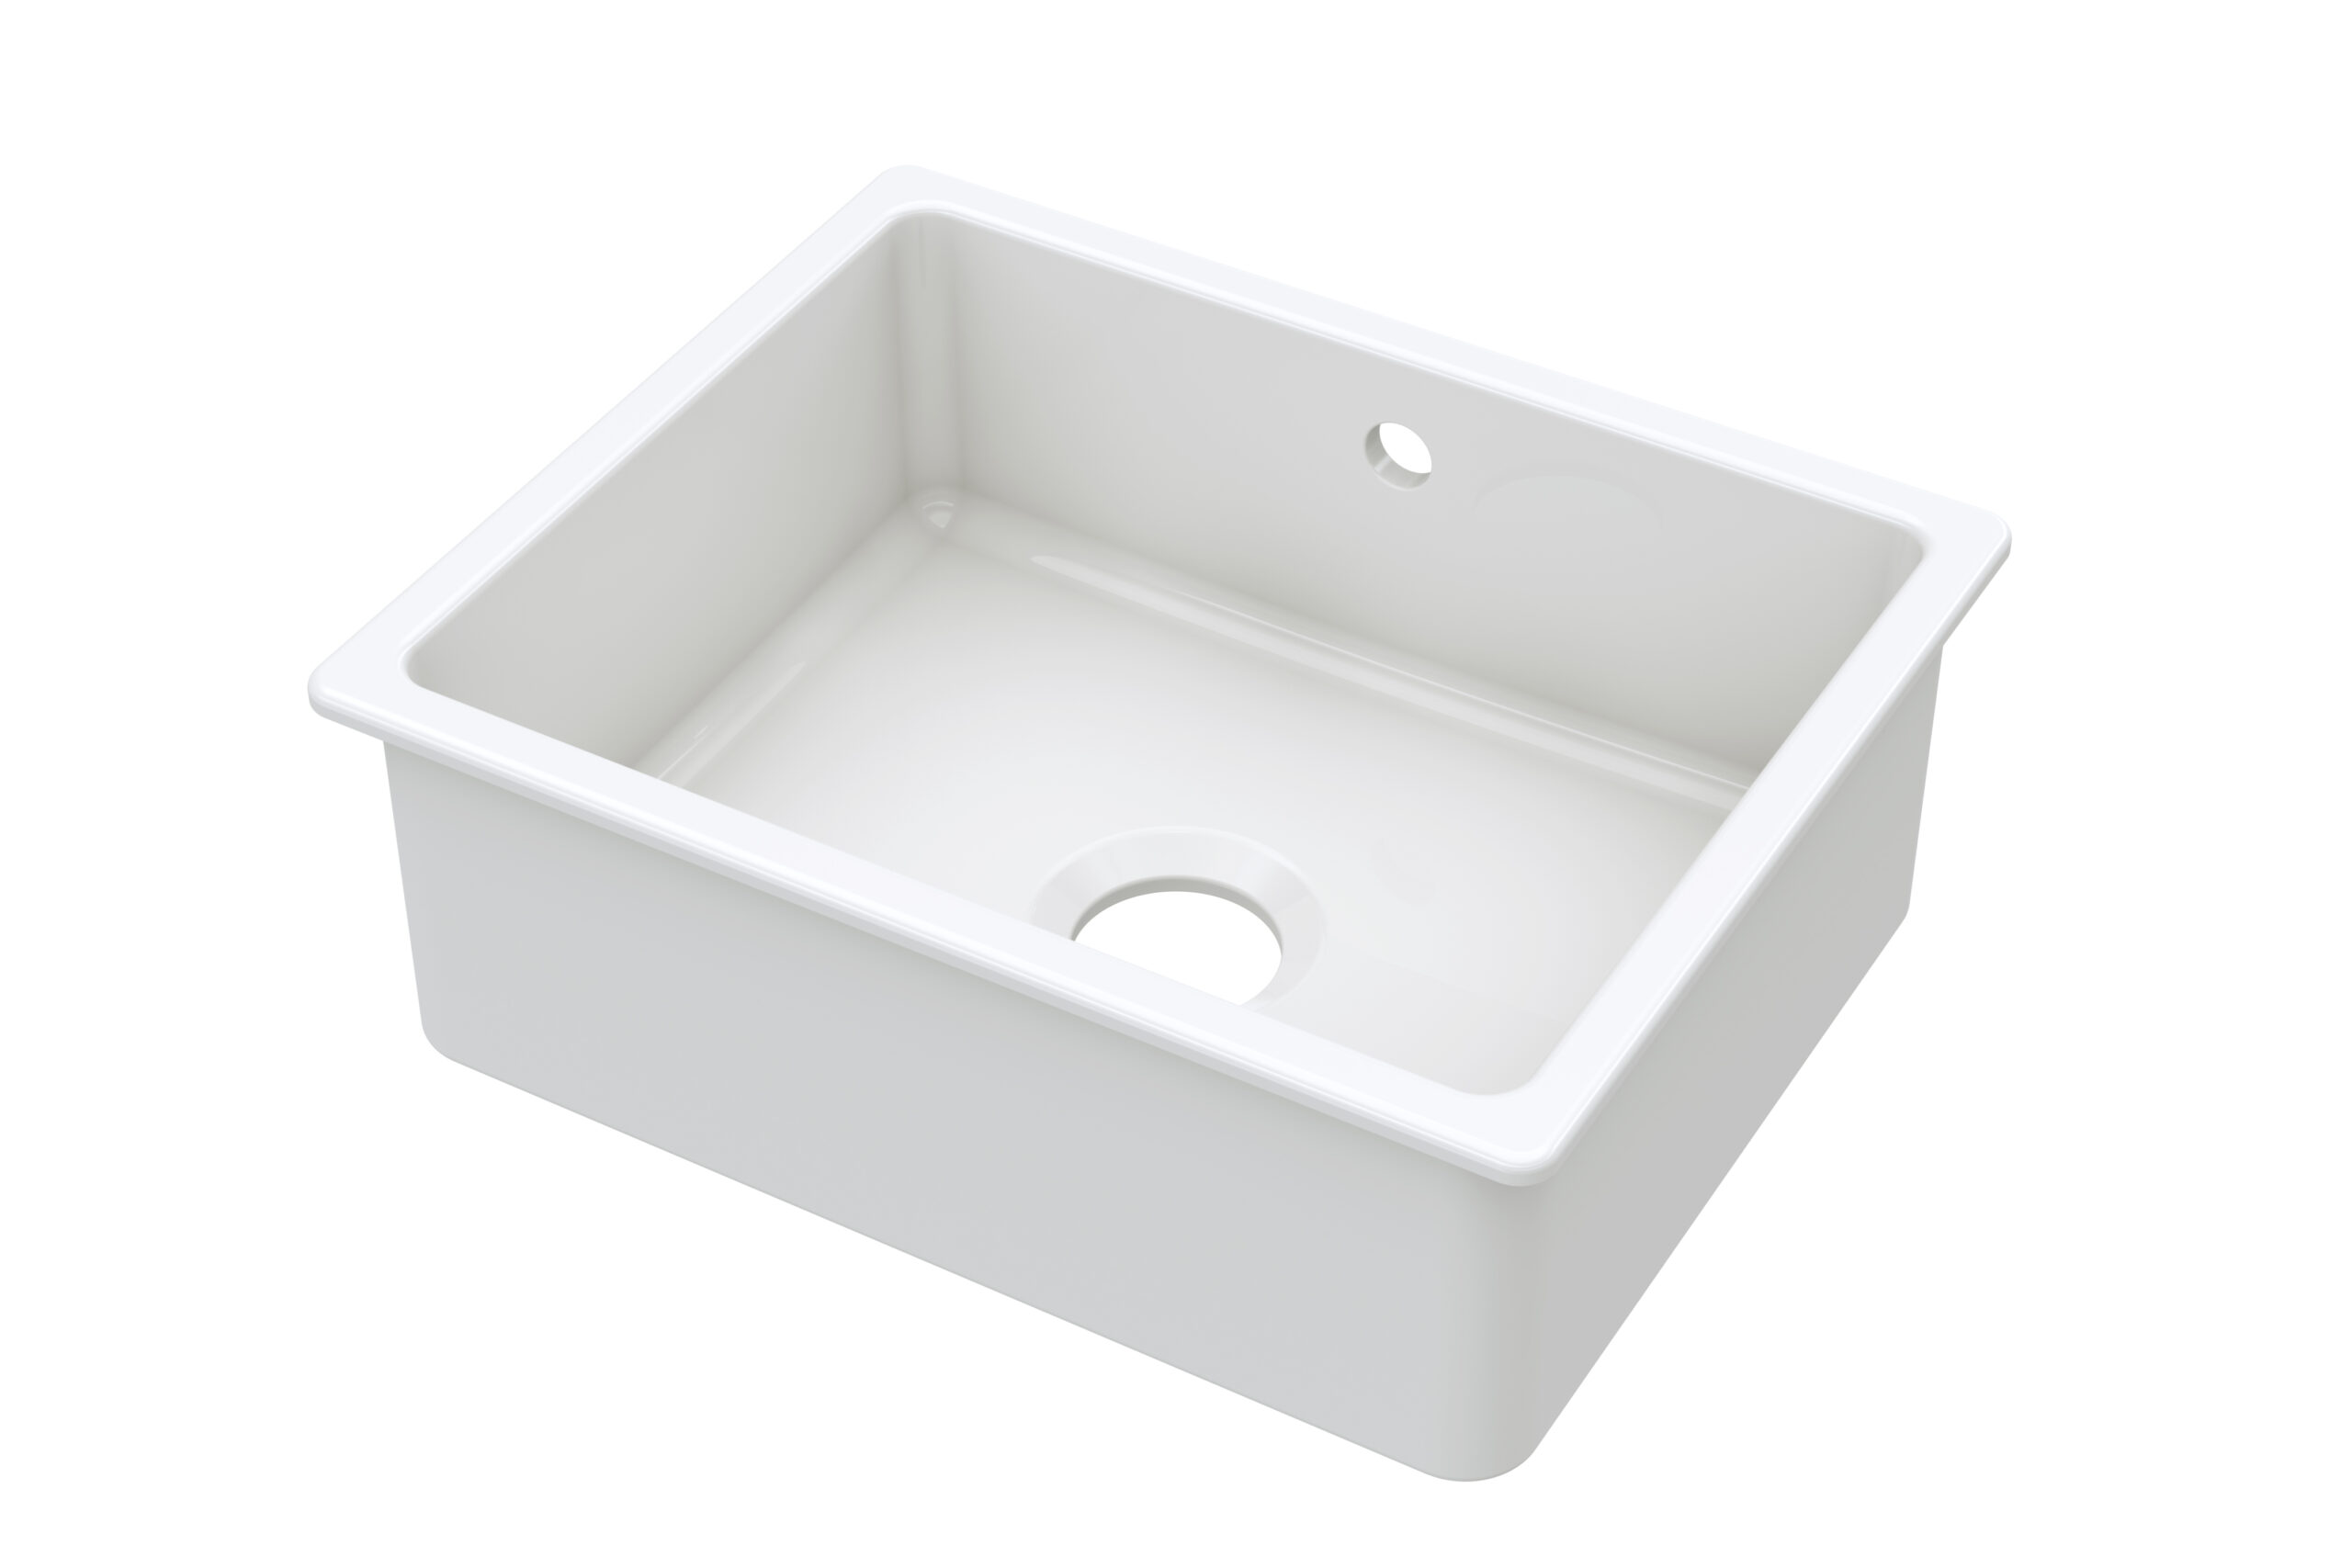 Regis Inset or Undermount Ceramic Sink